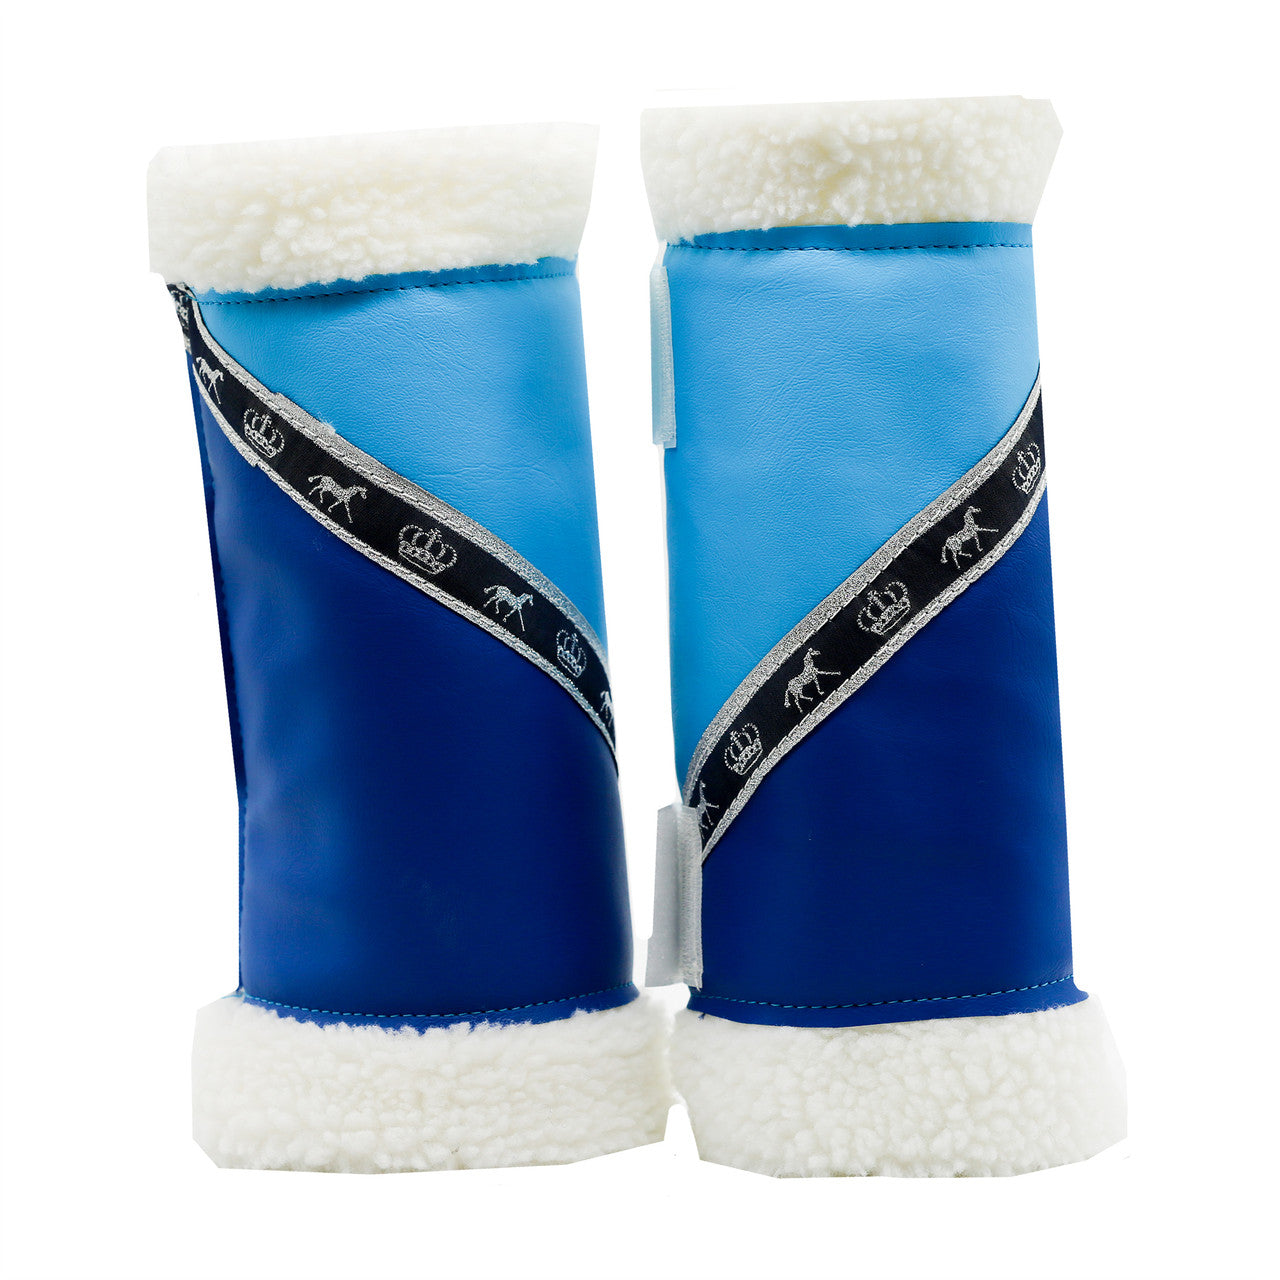 Sherpa Boots - Aqua & Royal Blue (PAIR) - made to order.